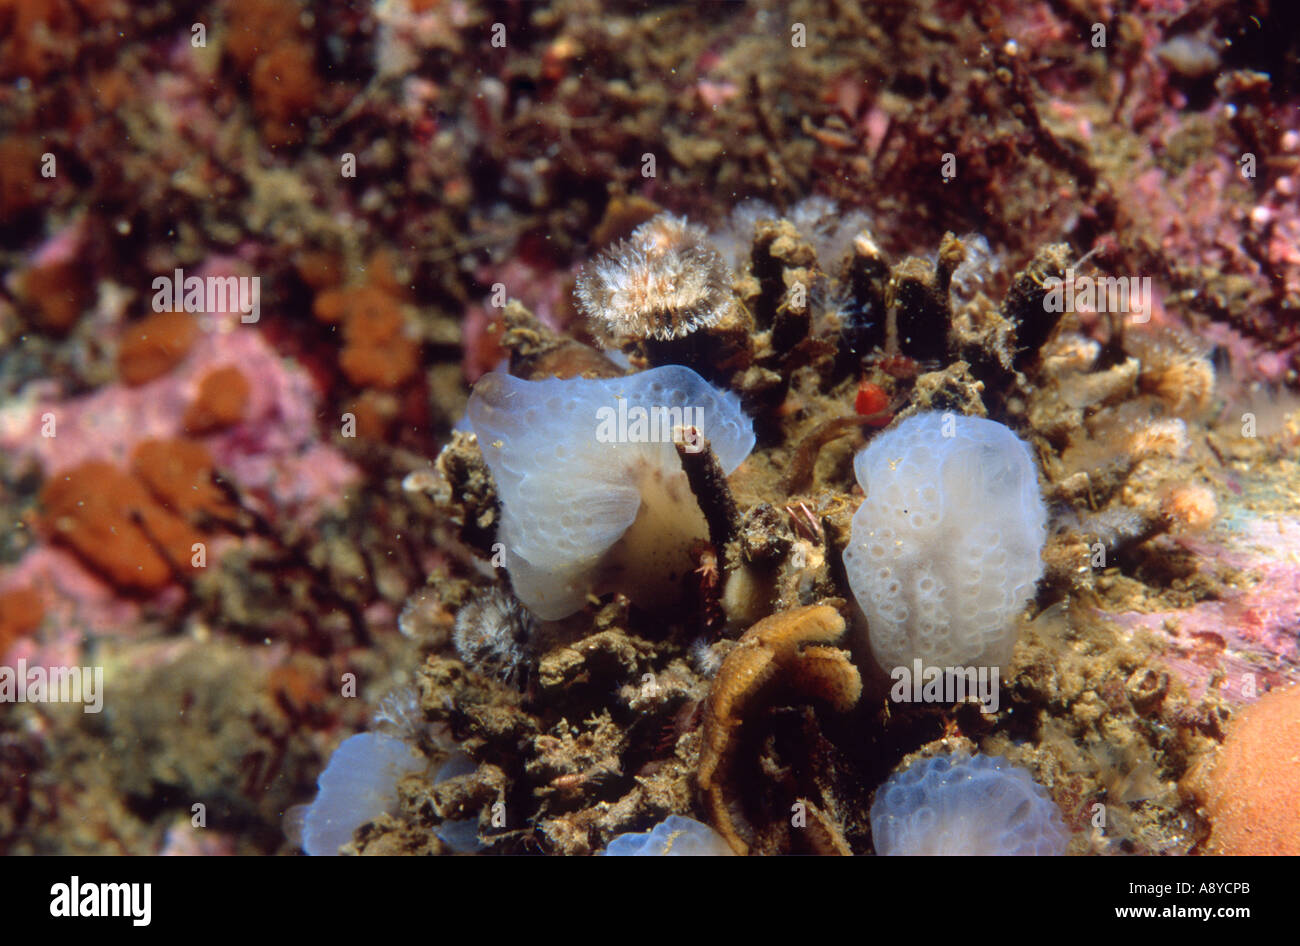 Closeup of colonial sea squirt ( ascidian, Ascidiacea ) Aplidium glabrum common in north Atlantic and Pacific oceans. Underwater Stock Photo